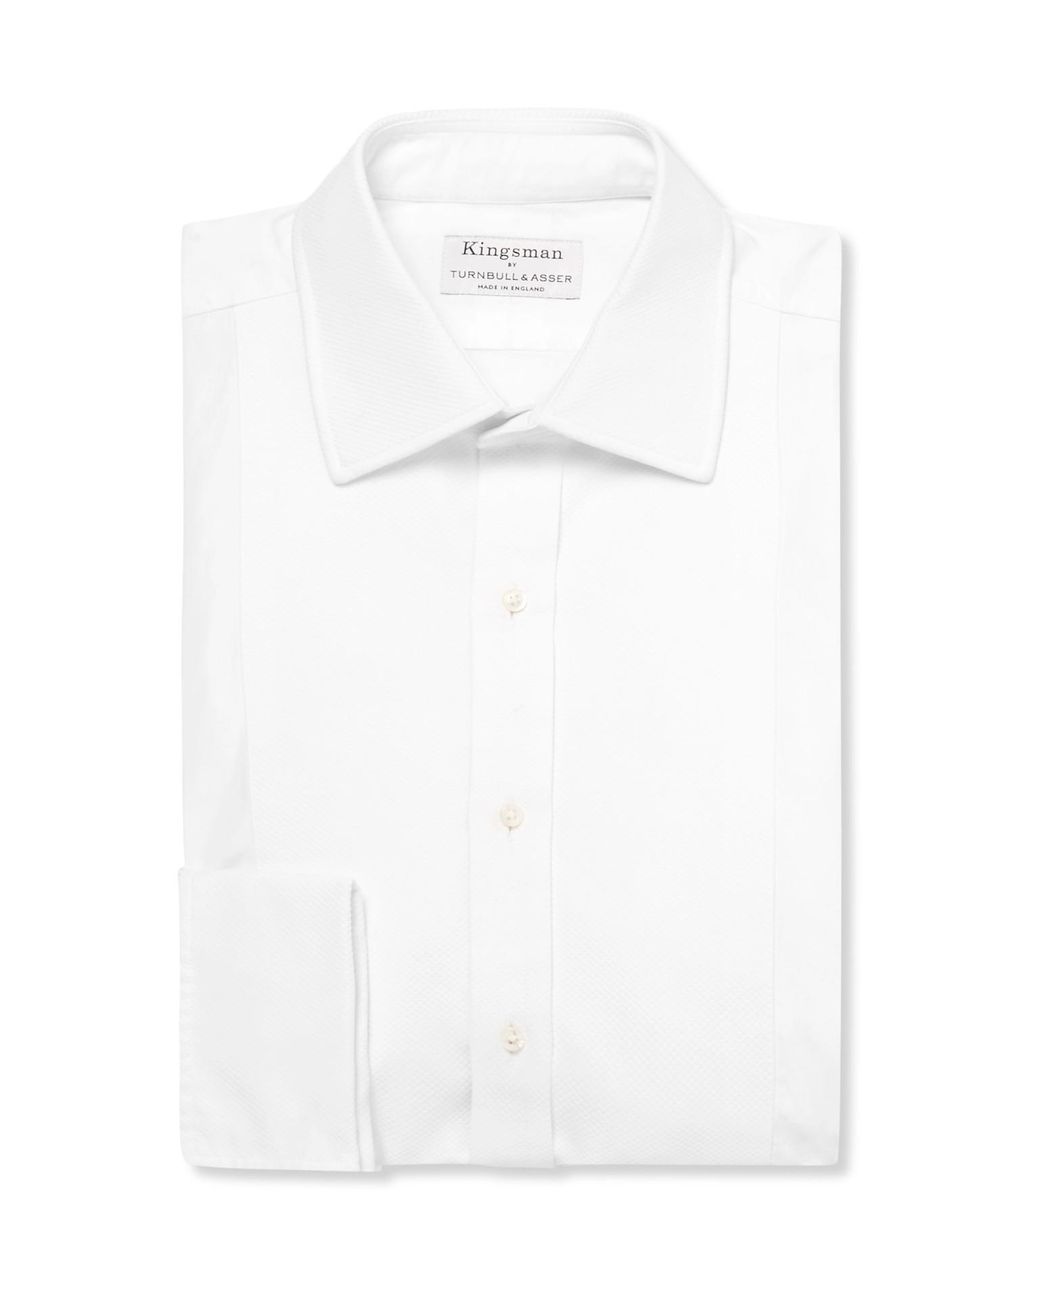 Kingsman Turnbull & Asser White Bib-front Cotton Tuxedo Shirt for Men - Lyst